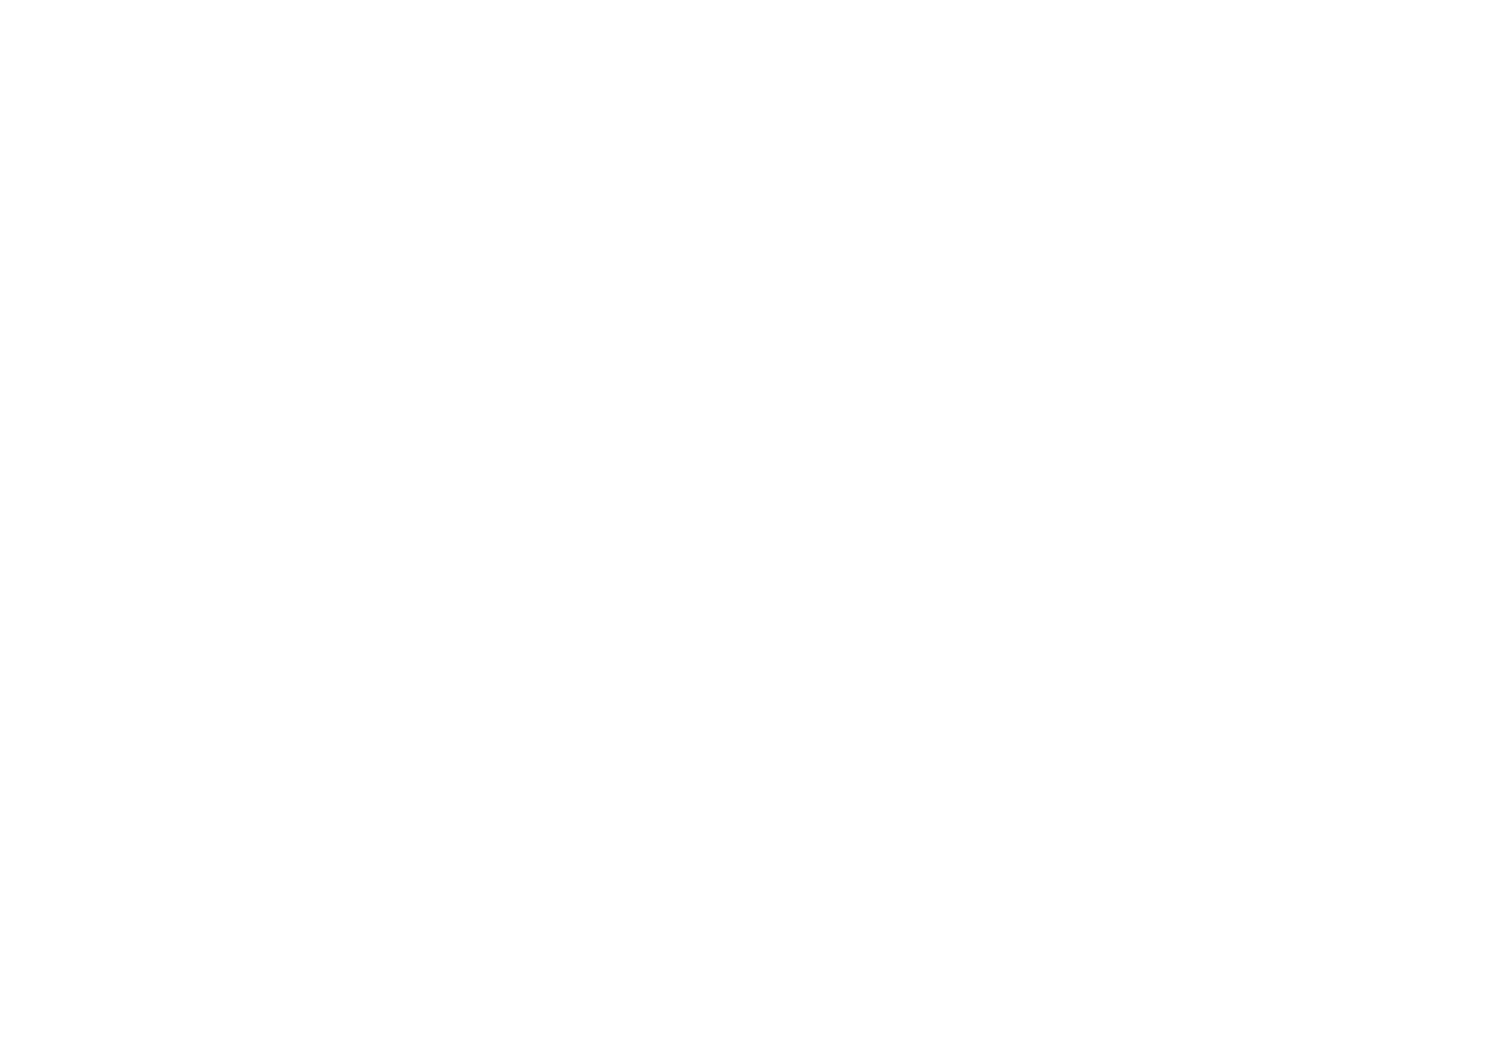 becky bowe